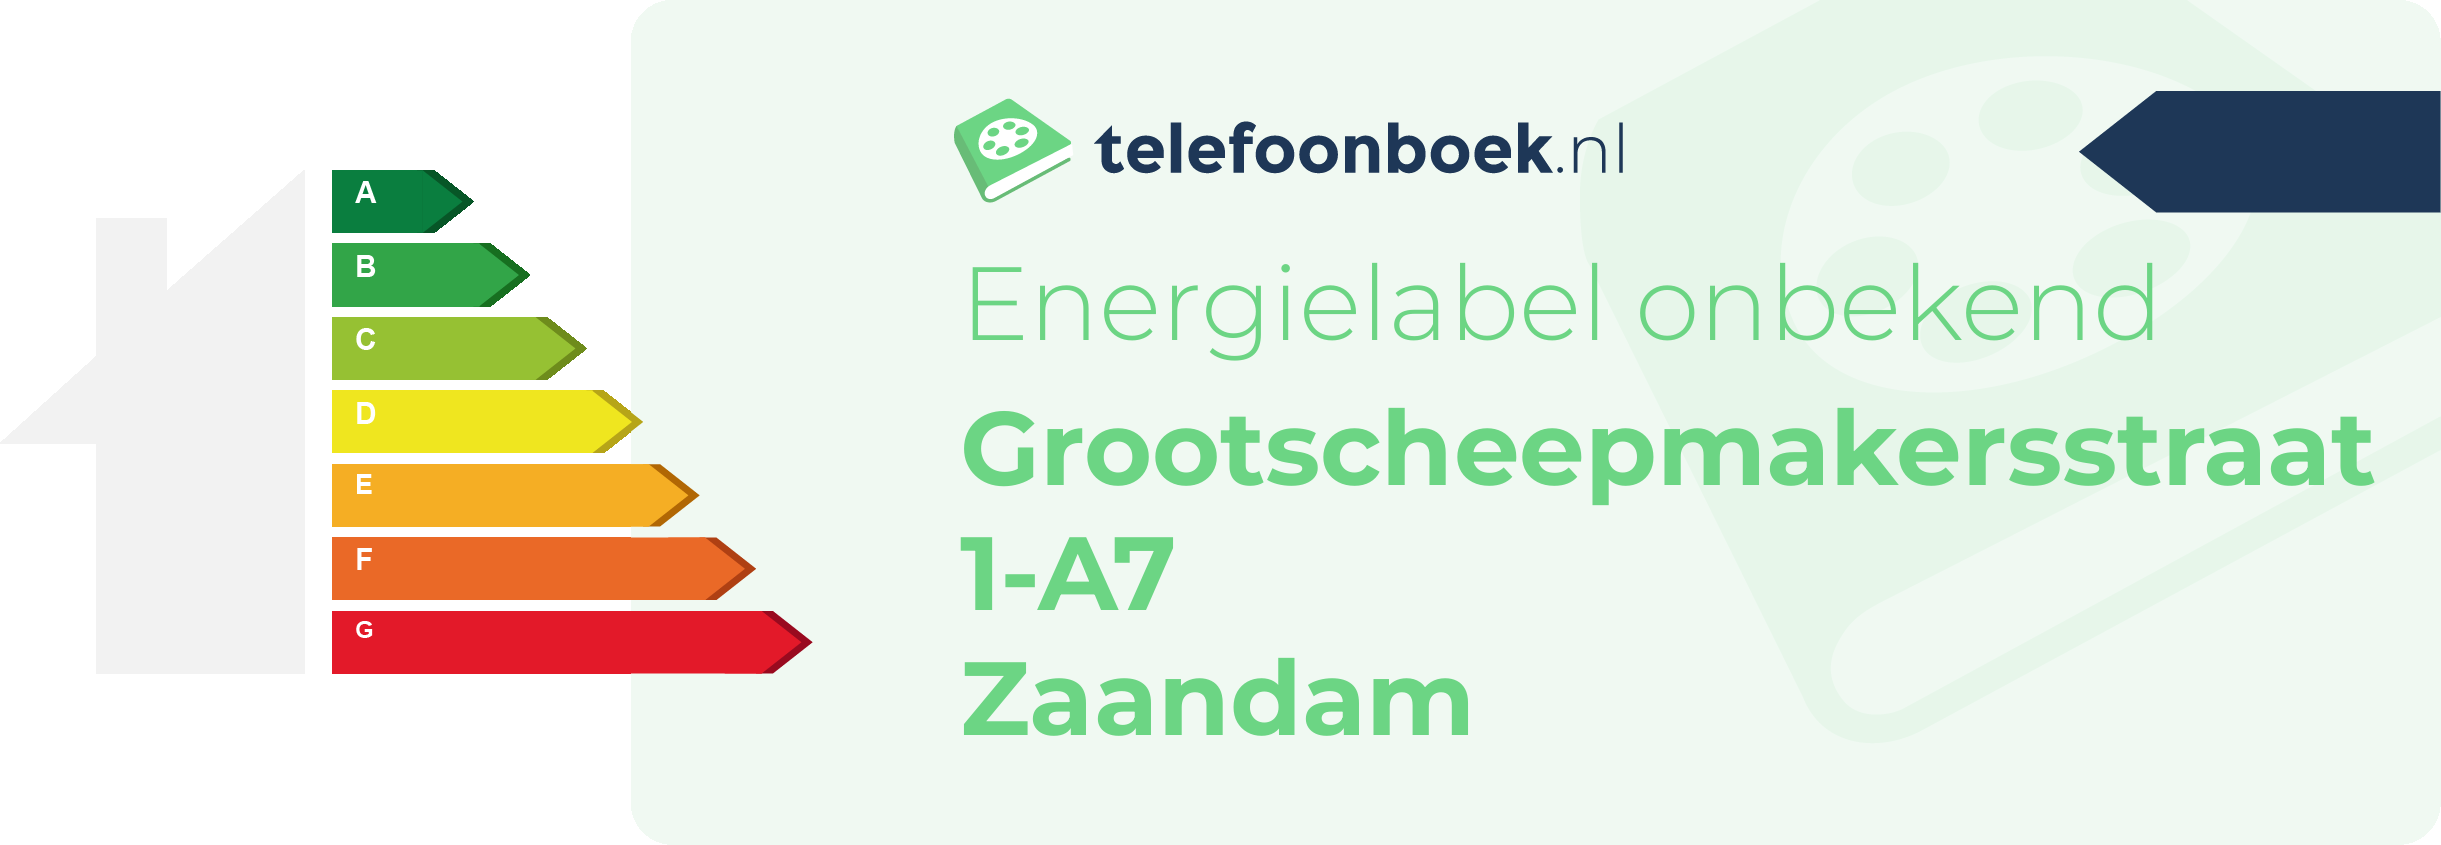 Energielabel Grootscheepmakersstraat 1-A7 Zaandam